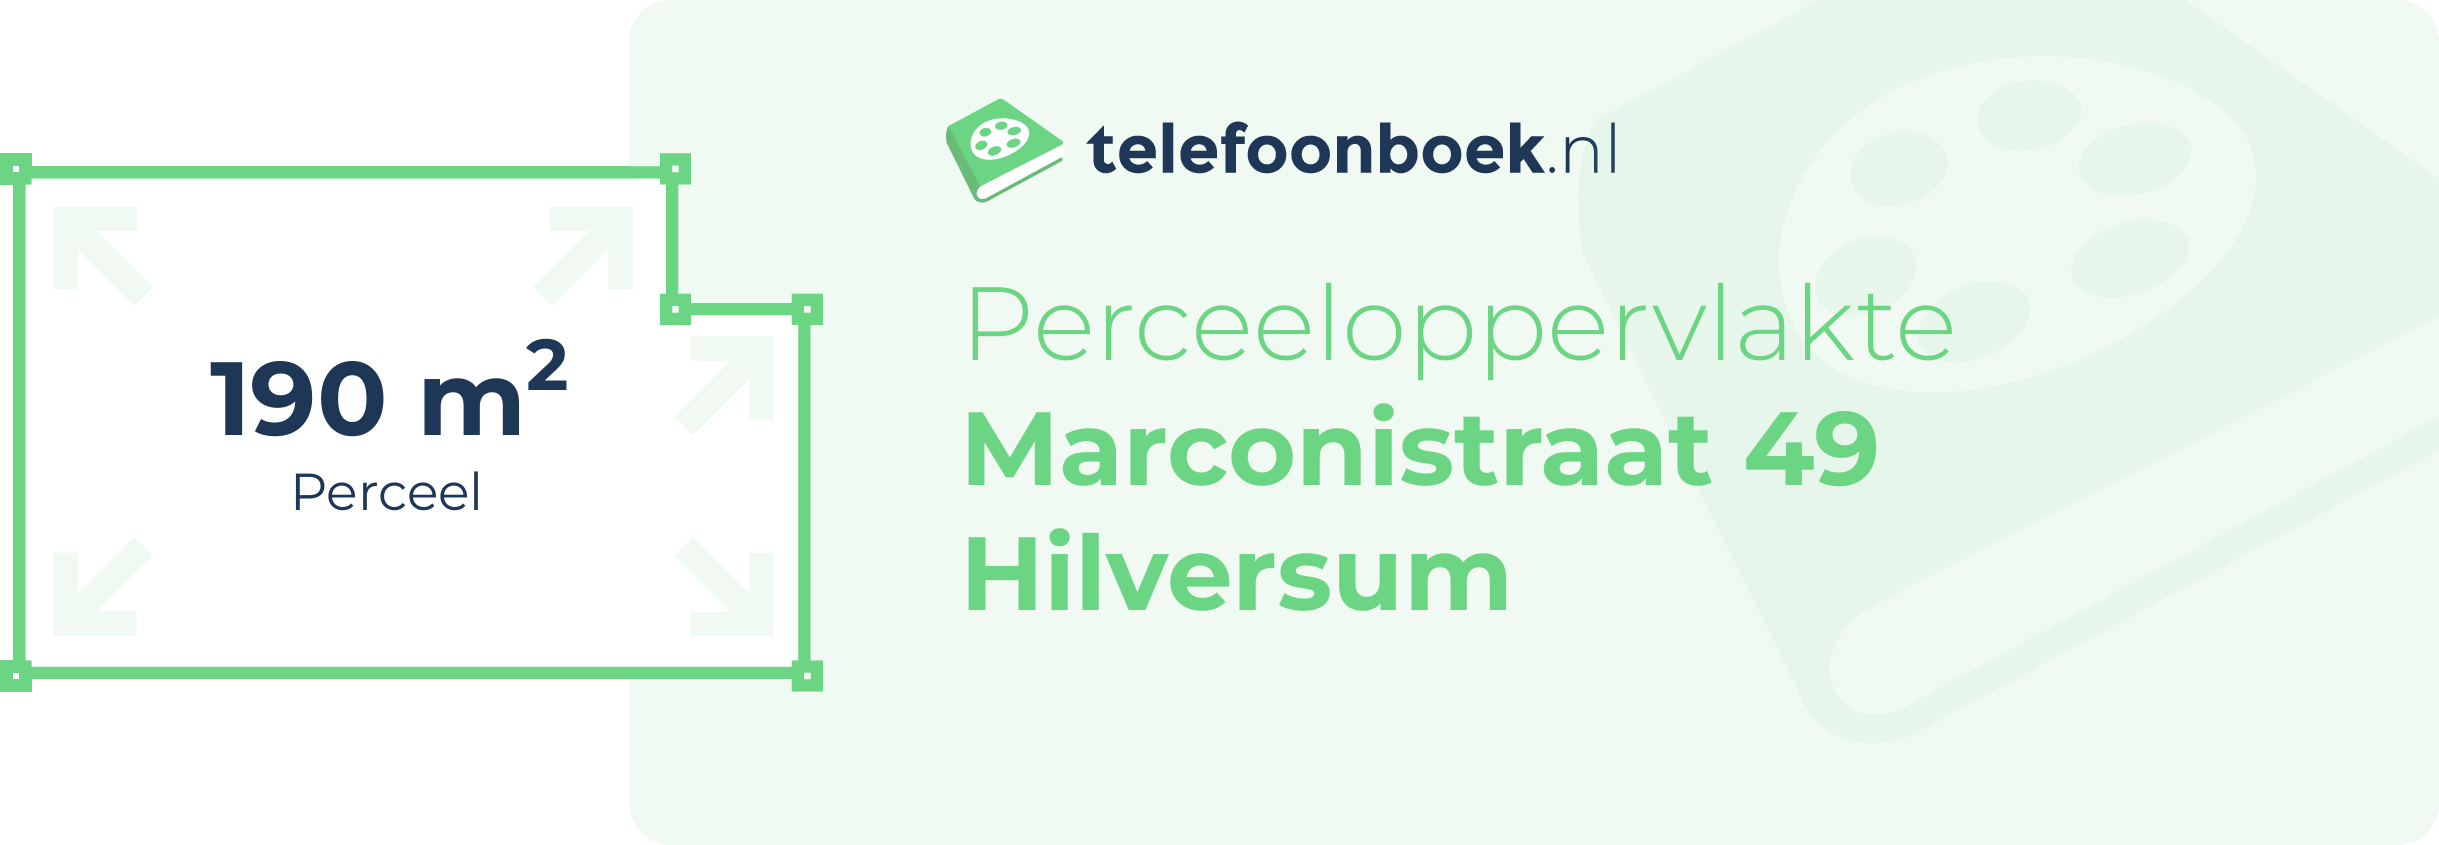 Perceeloppervlakte Marconistraat 49 Hilversum